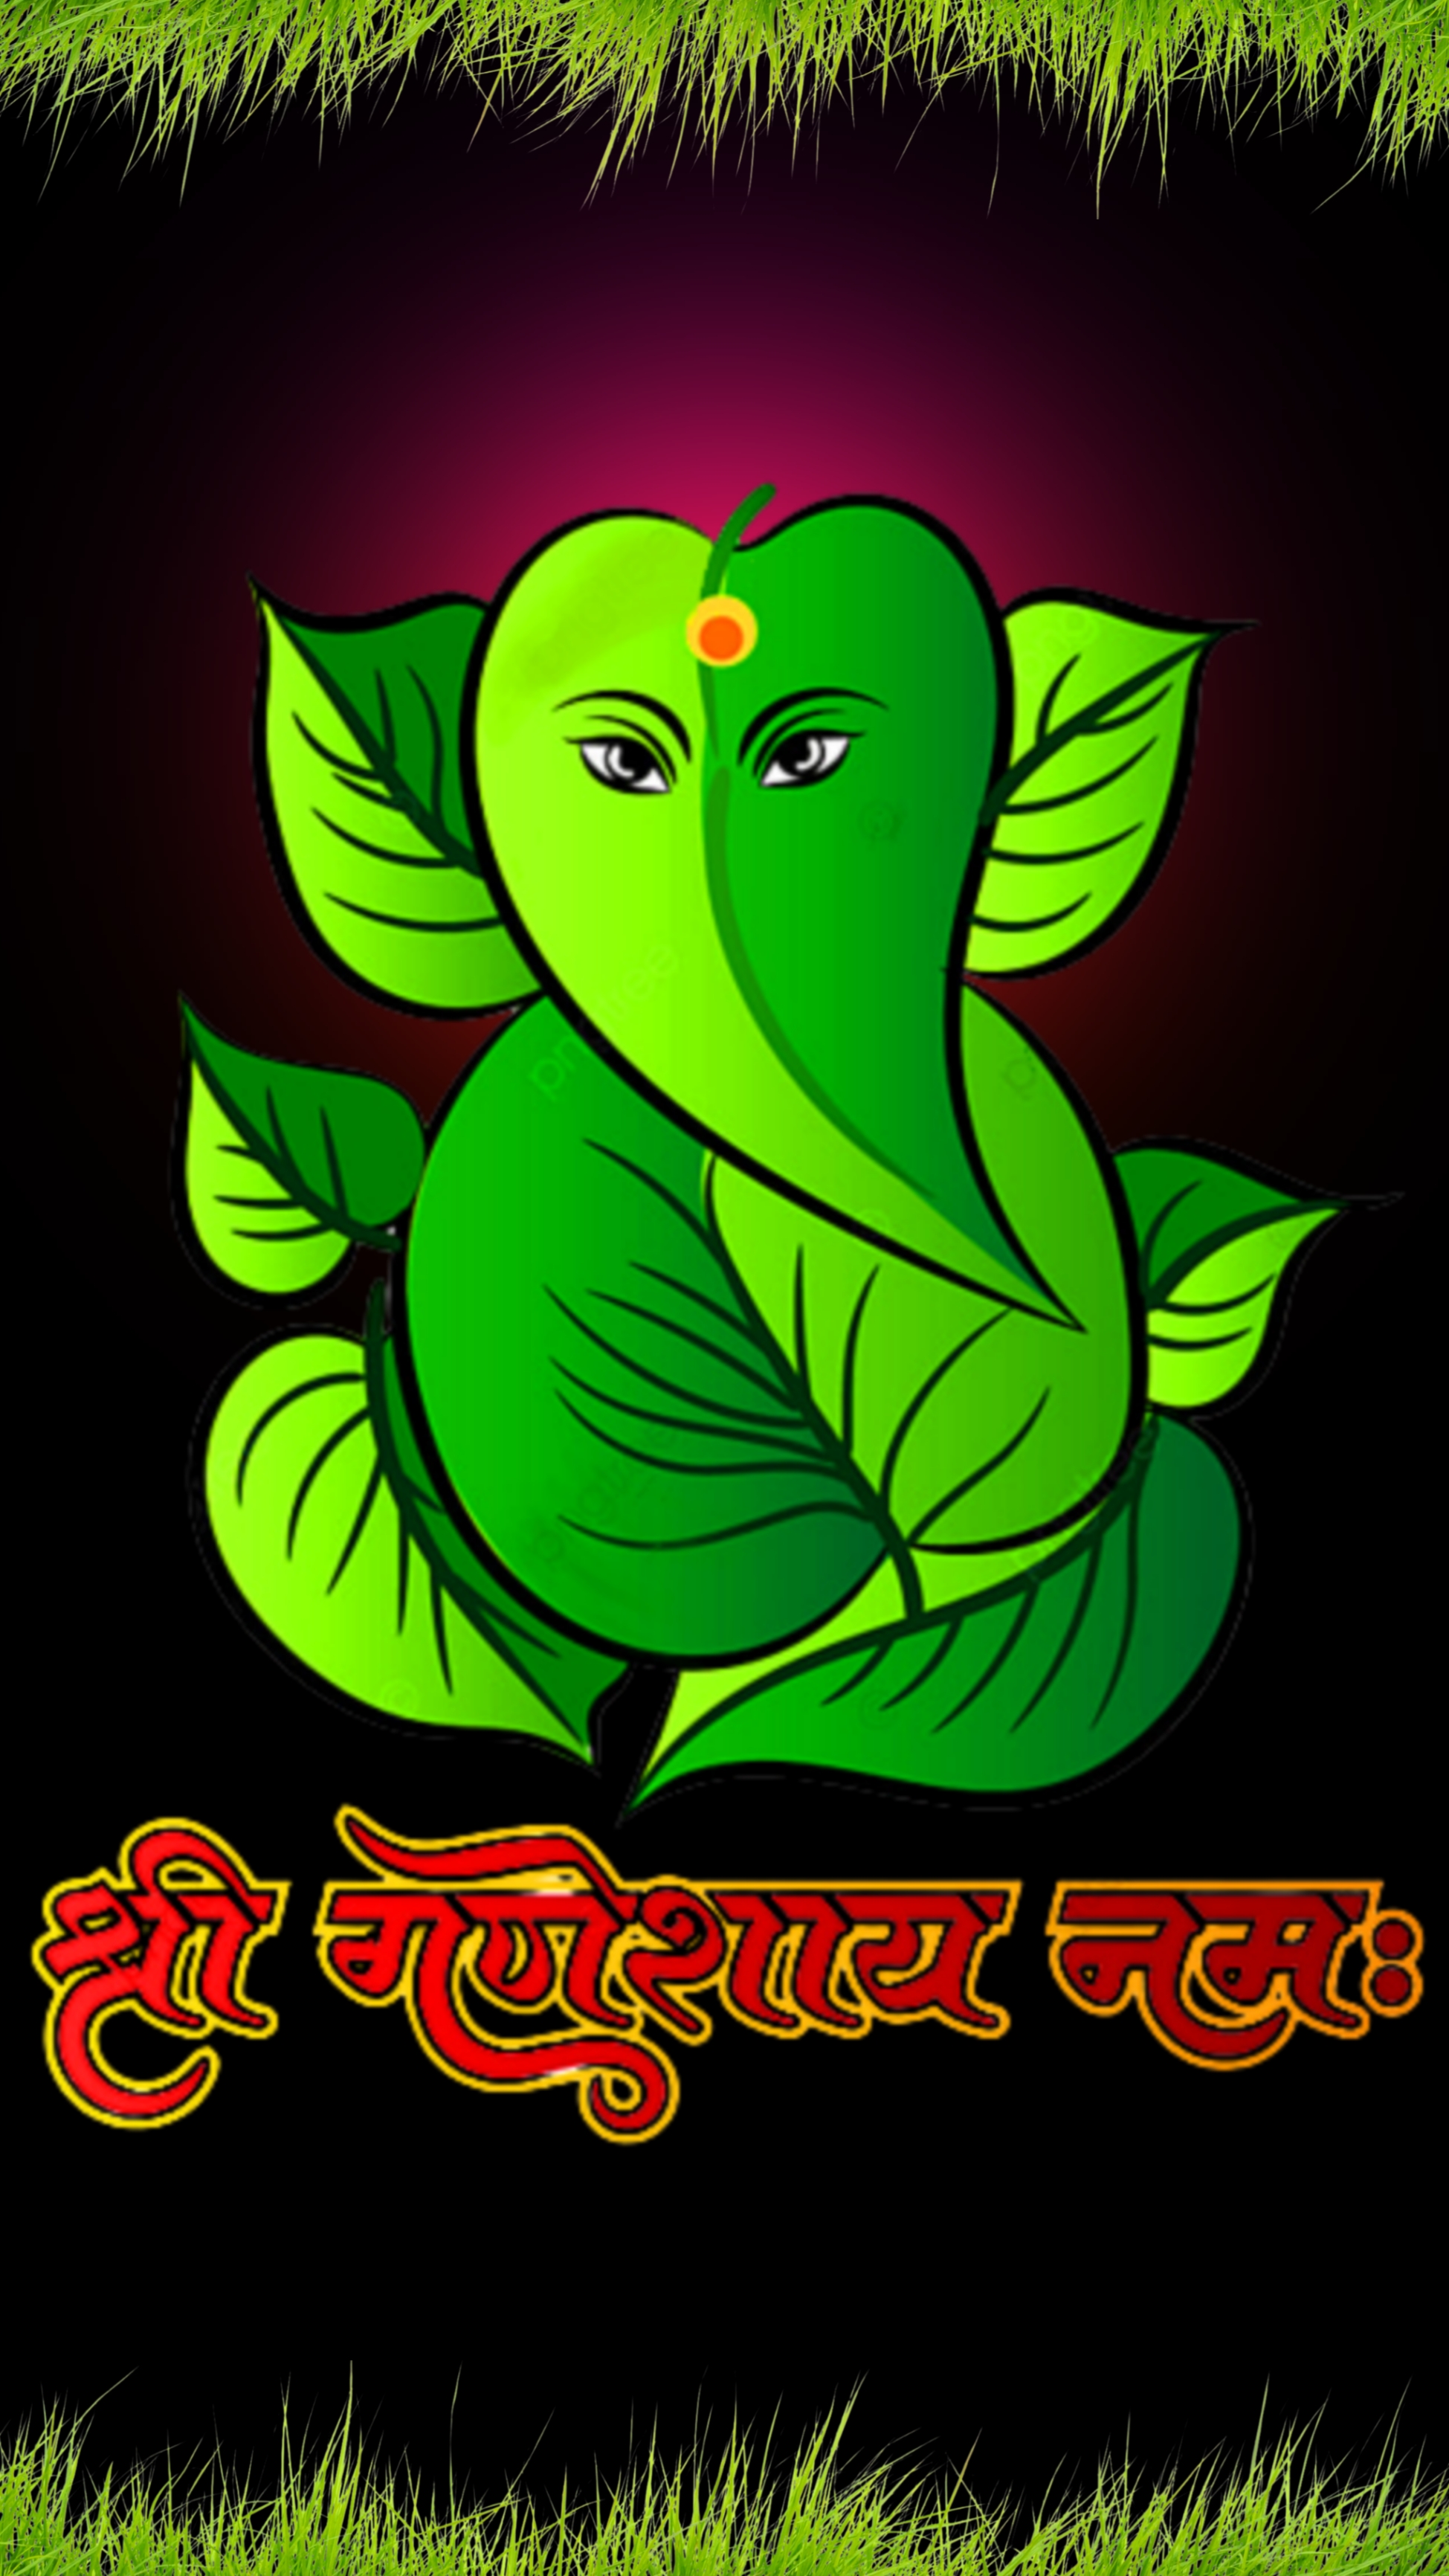 गणेश जी वॉलपेपर  Ganesh ji Wallpapers for mobile phones | Best Ganesha wallpapers for mobile download  Sri Ganesh ji 4k wallpaper for mobile